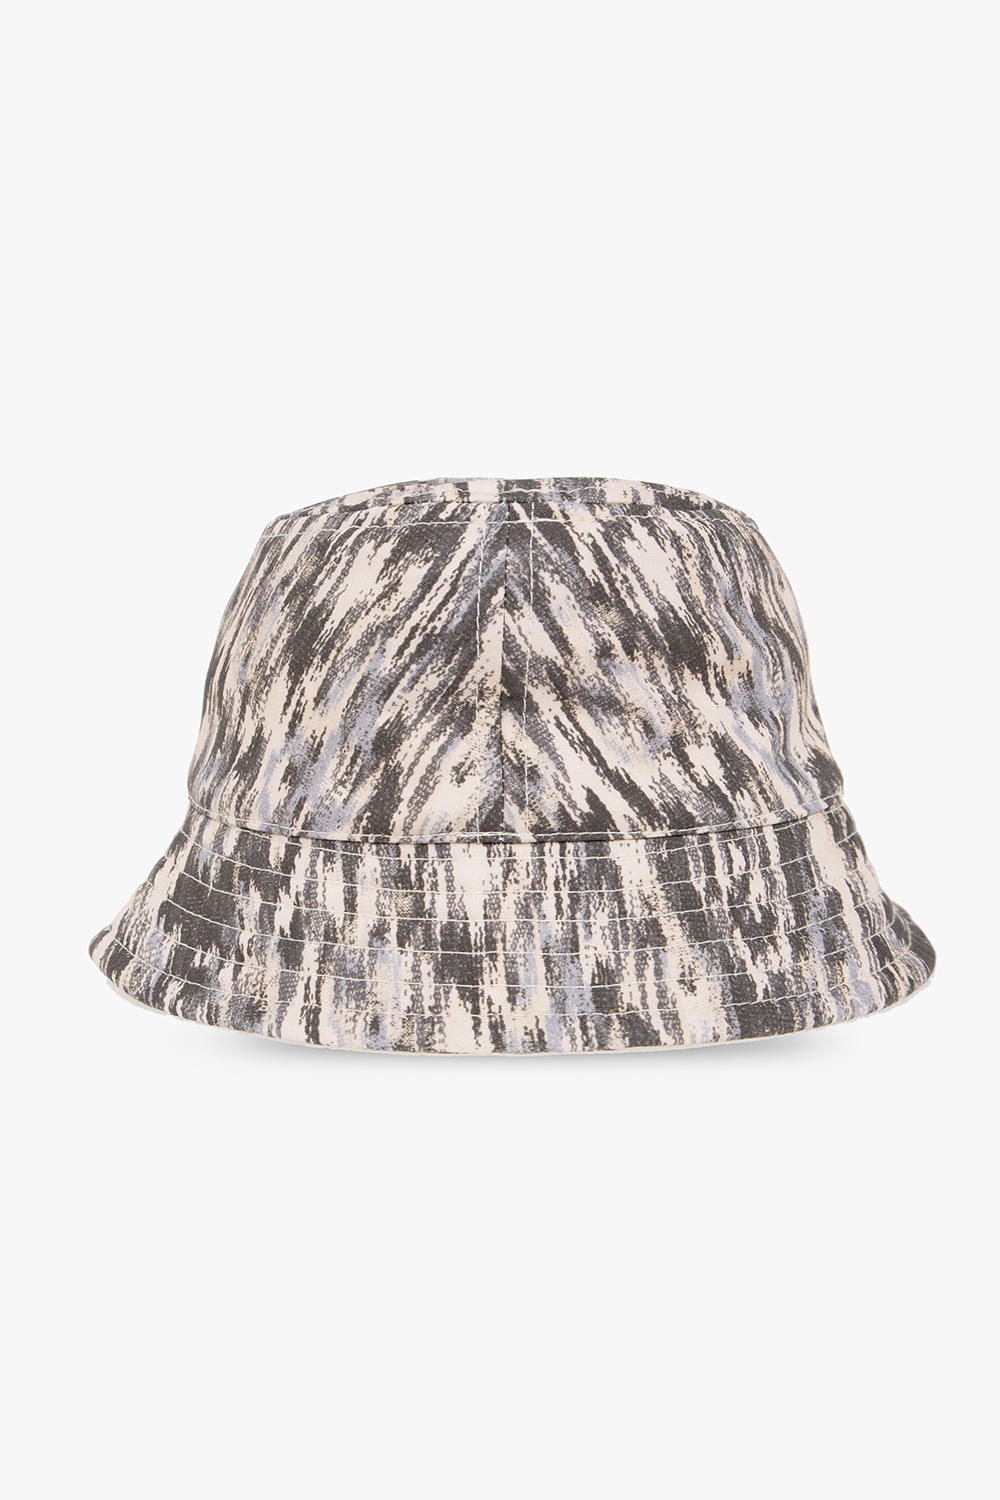 Isabel Marant ‘Haleyh’ patterned bucket hat